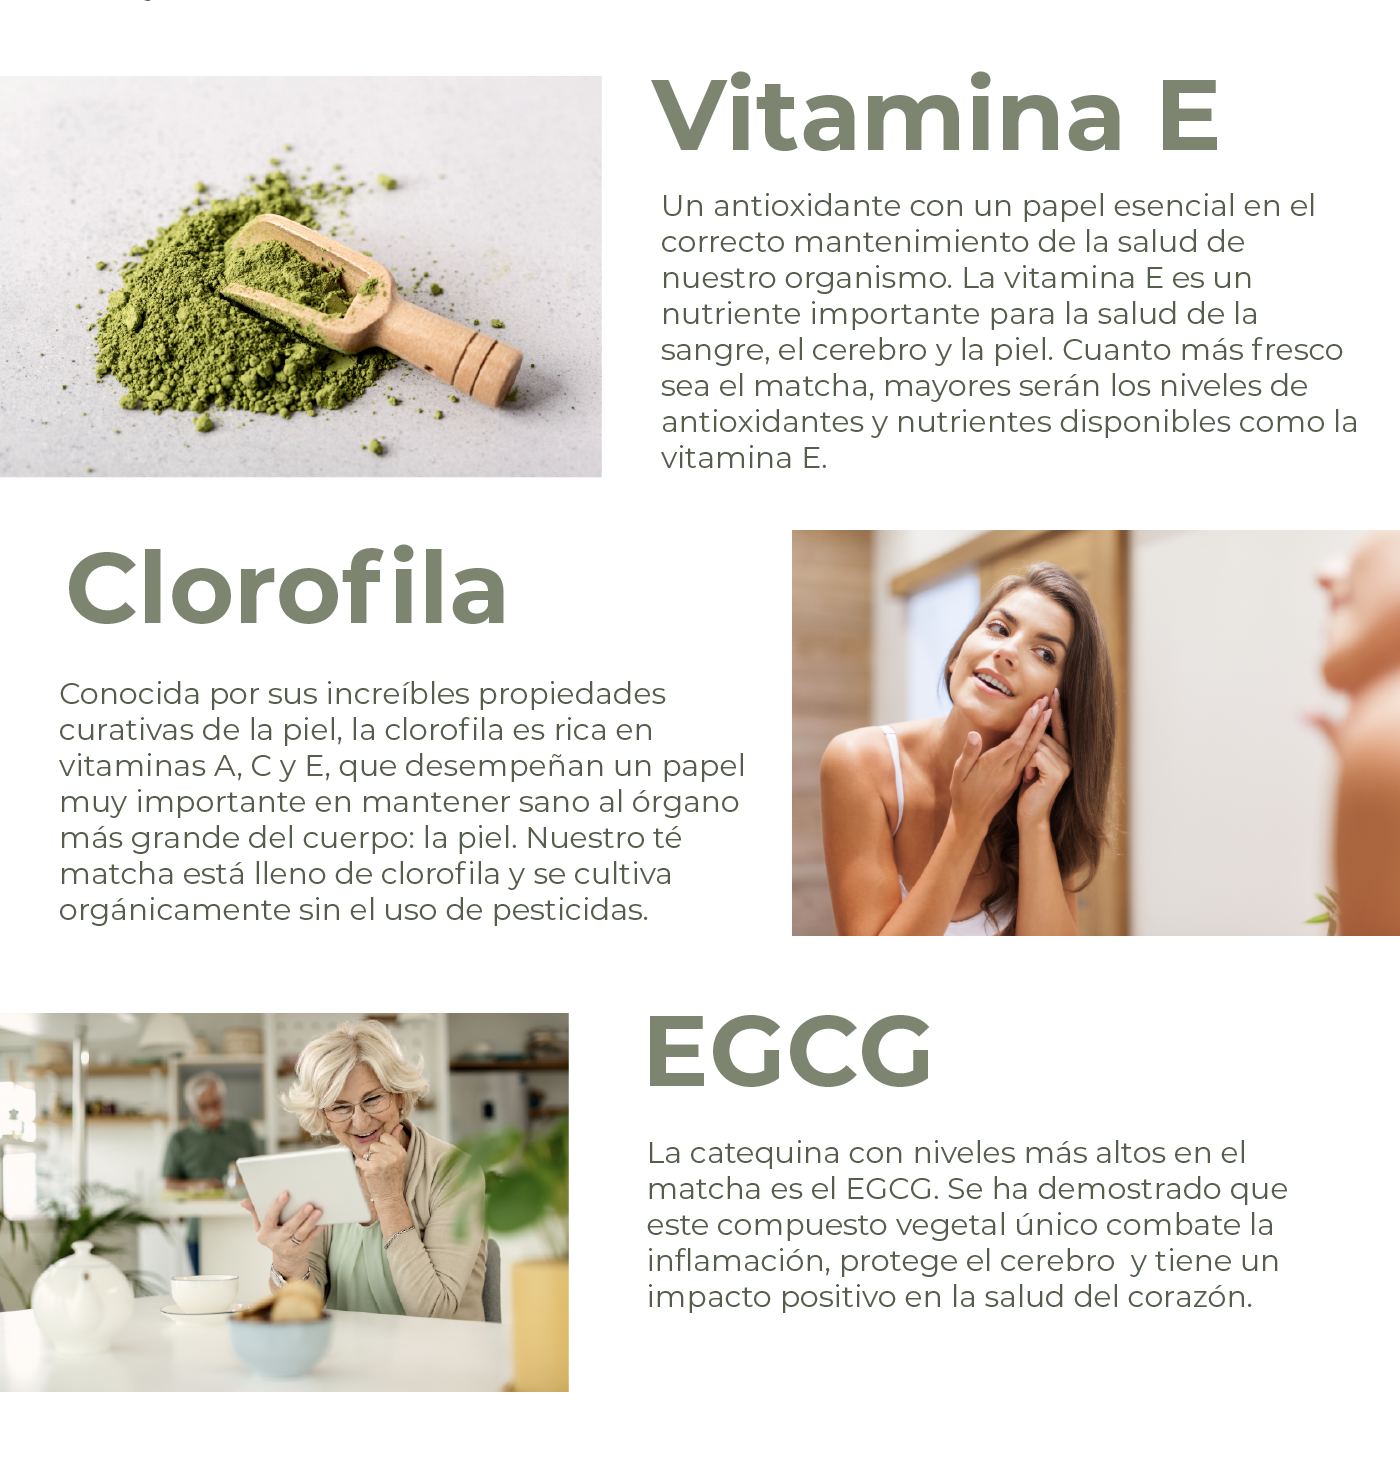 Vitamina E Un antioxidante con un papel esencial en el correcto mantenimiento de la salud de nuestro organismo. La vitamina E es un nutriente importante para la salud de la sangre, el cerebro y la piel. Cuanto más fresco sea el matcha, mayores serán los niveles de antioxidantes y nutrientes disponibles como la vitamina E.   Clorofila Conocida por sus increíbles propiedades curativas de la piel, la clorofila es rica en vitaminas A, C y E, que desempeñan un papel muy importante en mantener sano al órgano más grande del cuerpo: la piel. Nuestro té matcha está lleno de clorofila y se cultiva orgánicamente sin el uso de pesticidas.  EGCG La catequina con niveles más altos en el matcha es el EGCG. Se ha demostrado que este compuesto vegetal único combate la inflamación, protege el cerebro  y tiene un impacto positivo en la salud del corazón.